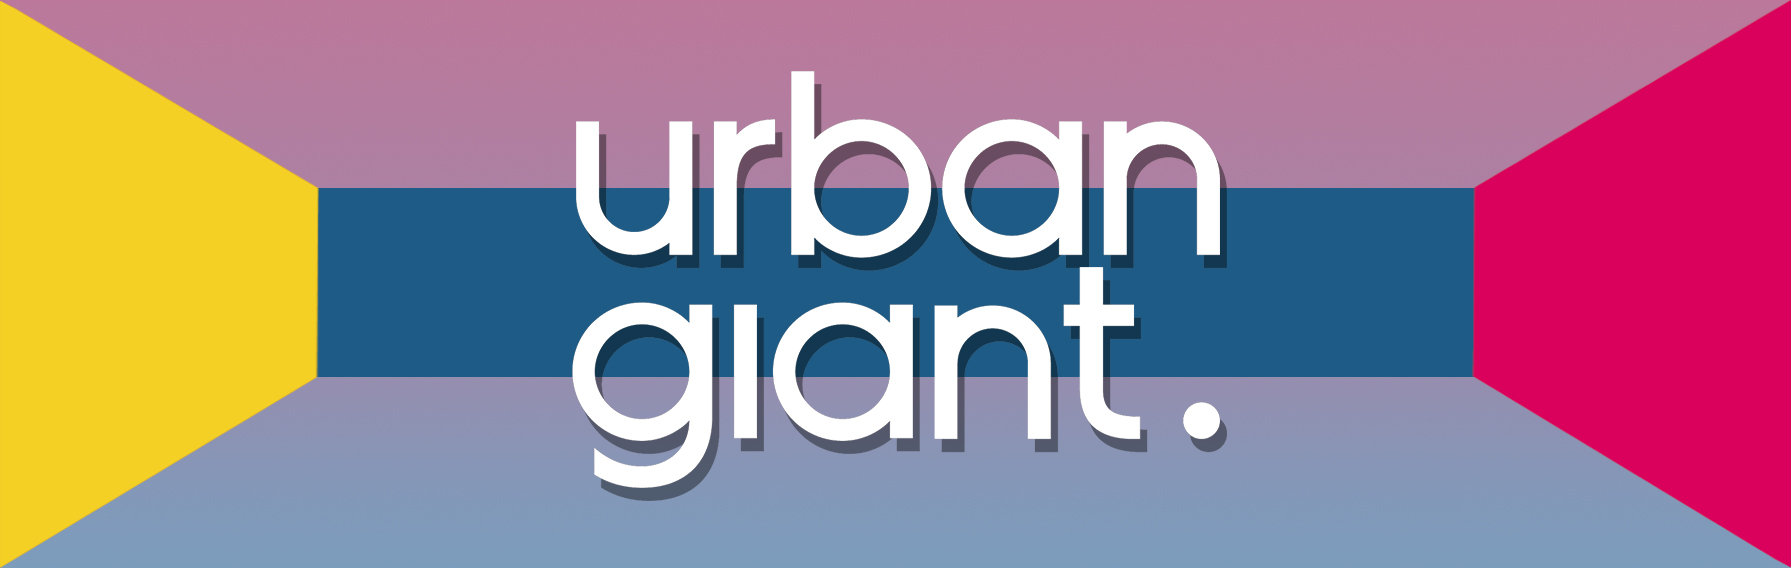 Urban Giant